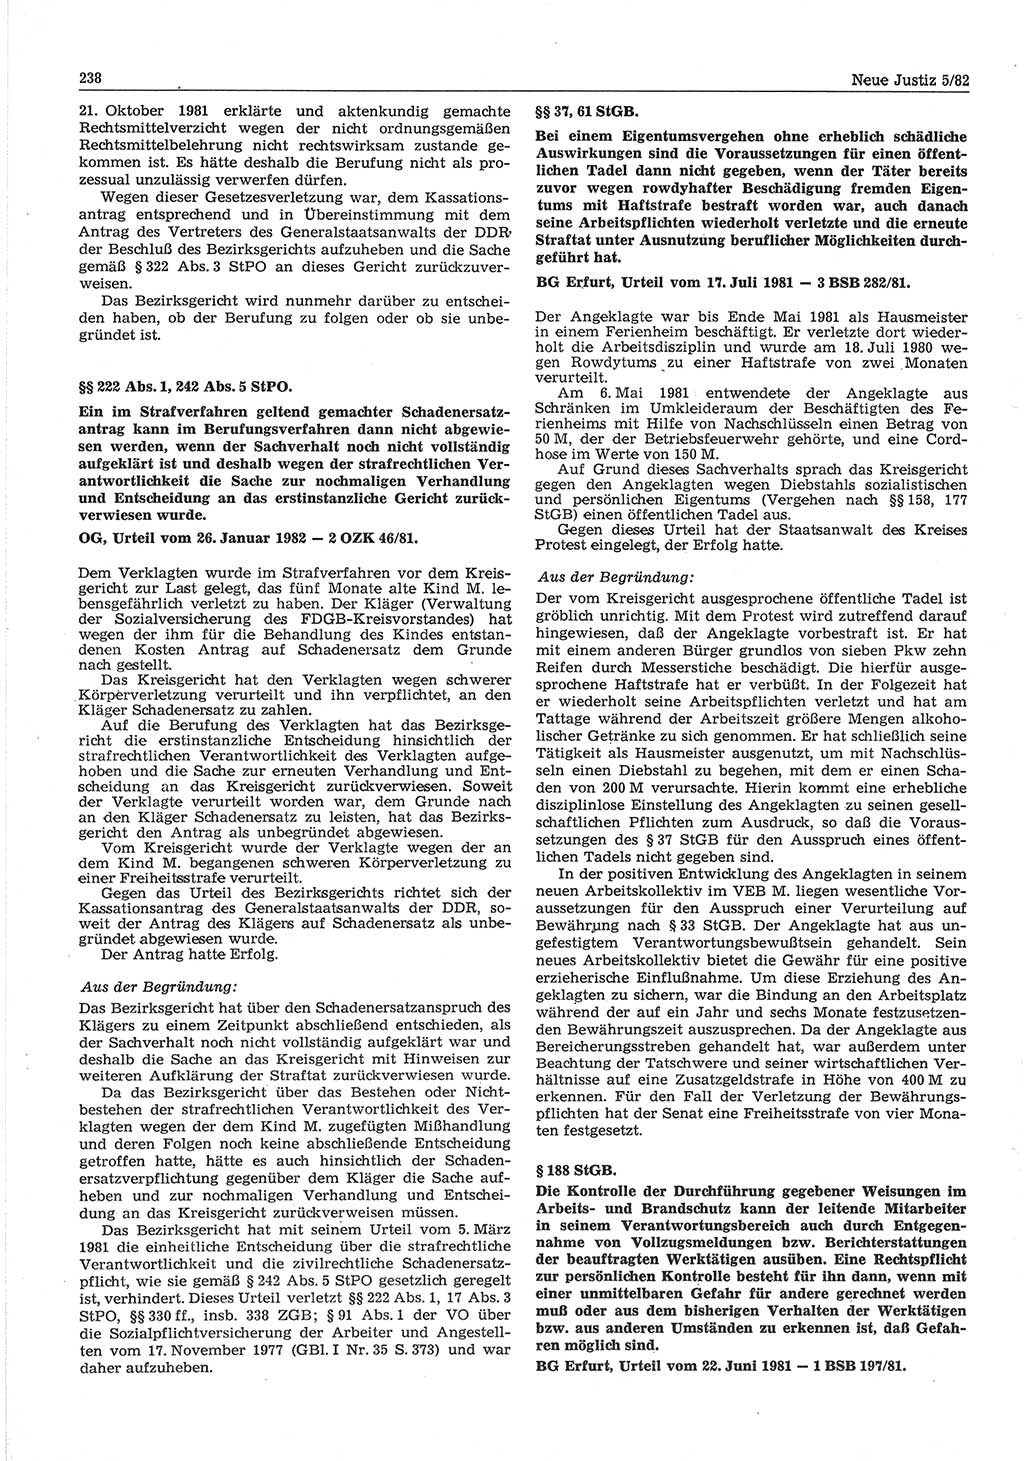 Neue Justiz (NJ), Zeitschrift für sozialistisches Recht und Gesetzlichkeit [Deutsche Demokratische Republik (DDR)], 36. Jahrgang 1982, Seite 238 (NJ DDR 1982, S. 238)